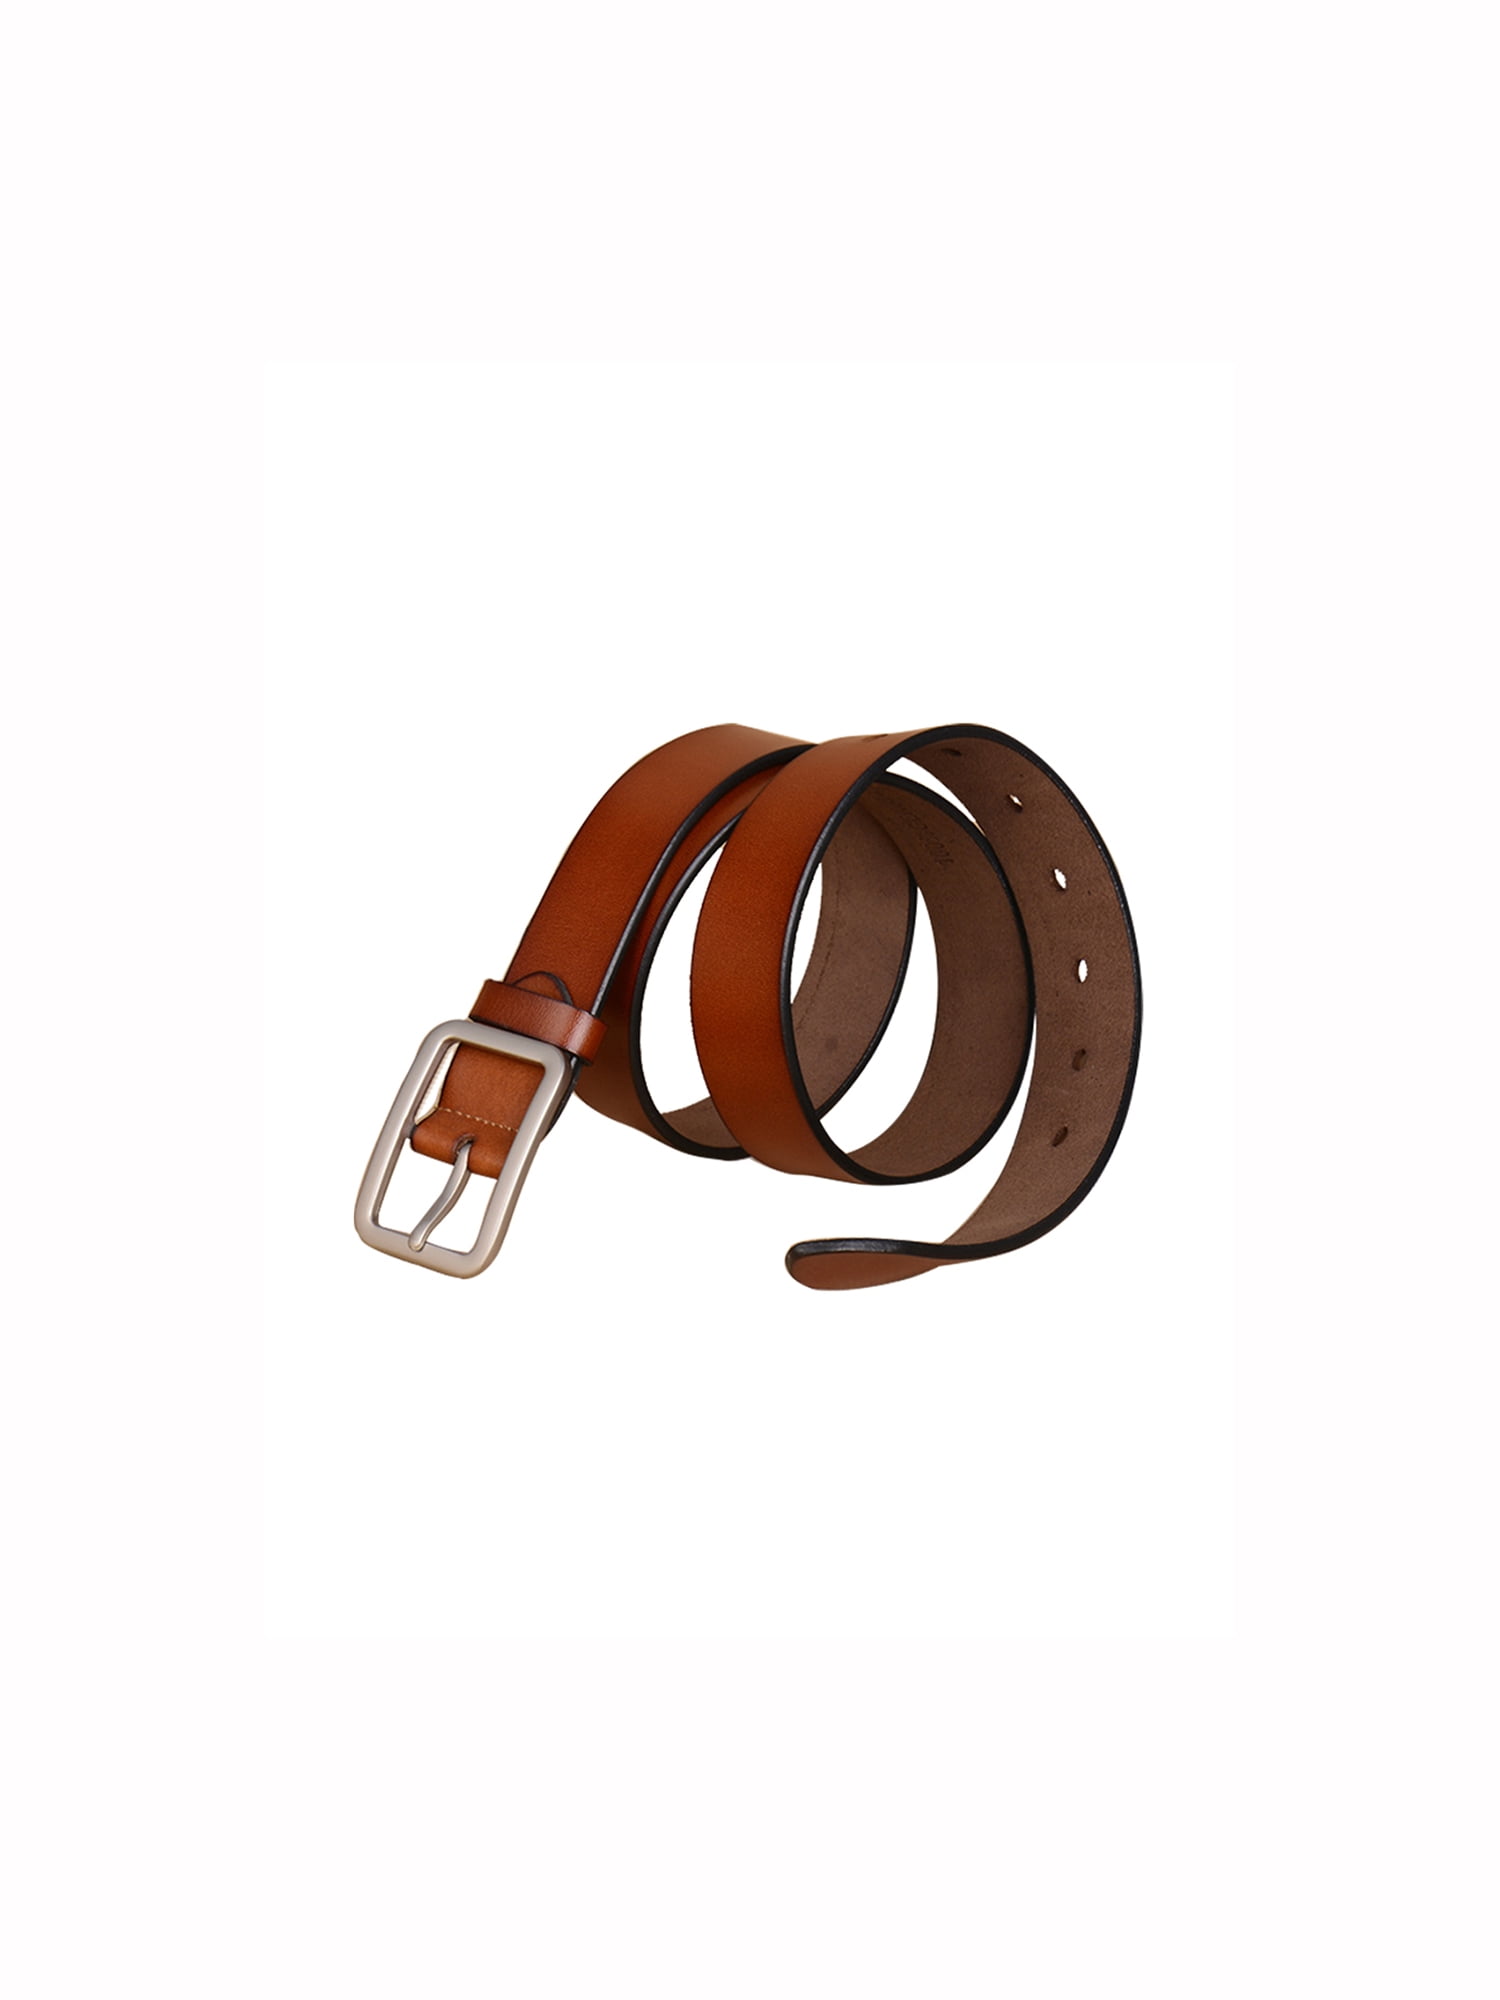 Men Casual Single Pin Buckle Dress Leather Belt 33mm Width 1 1/4